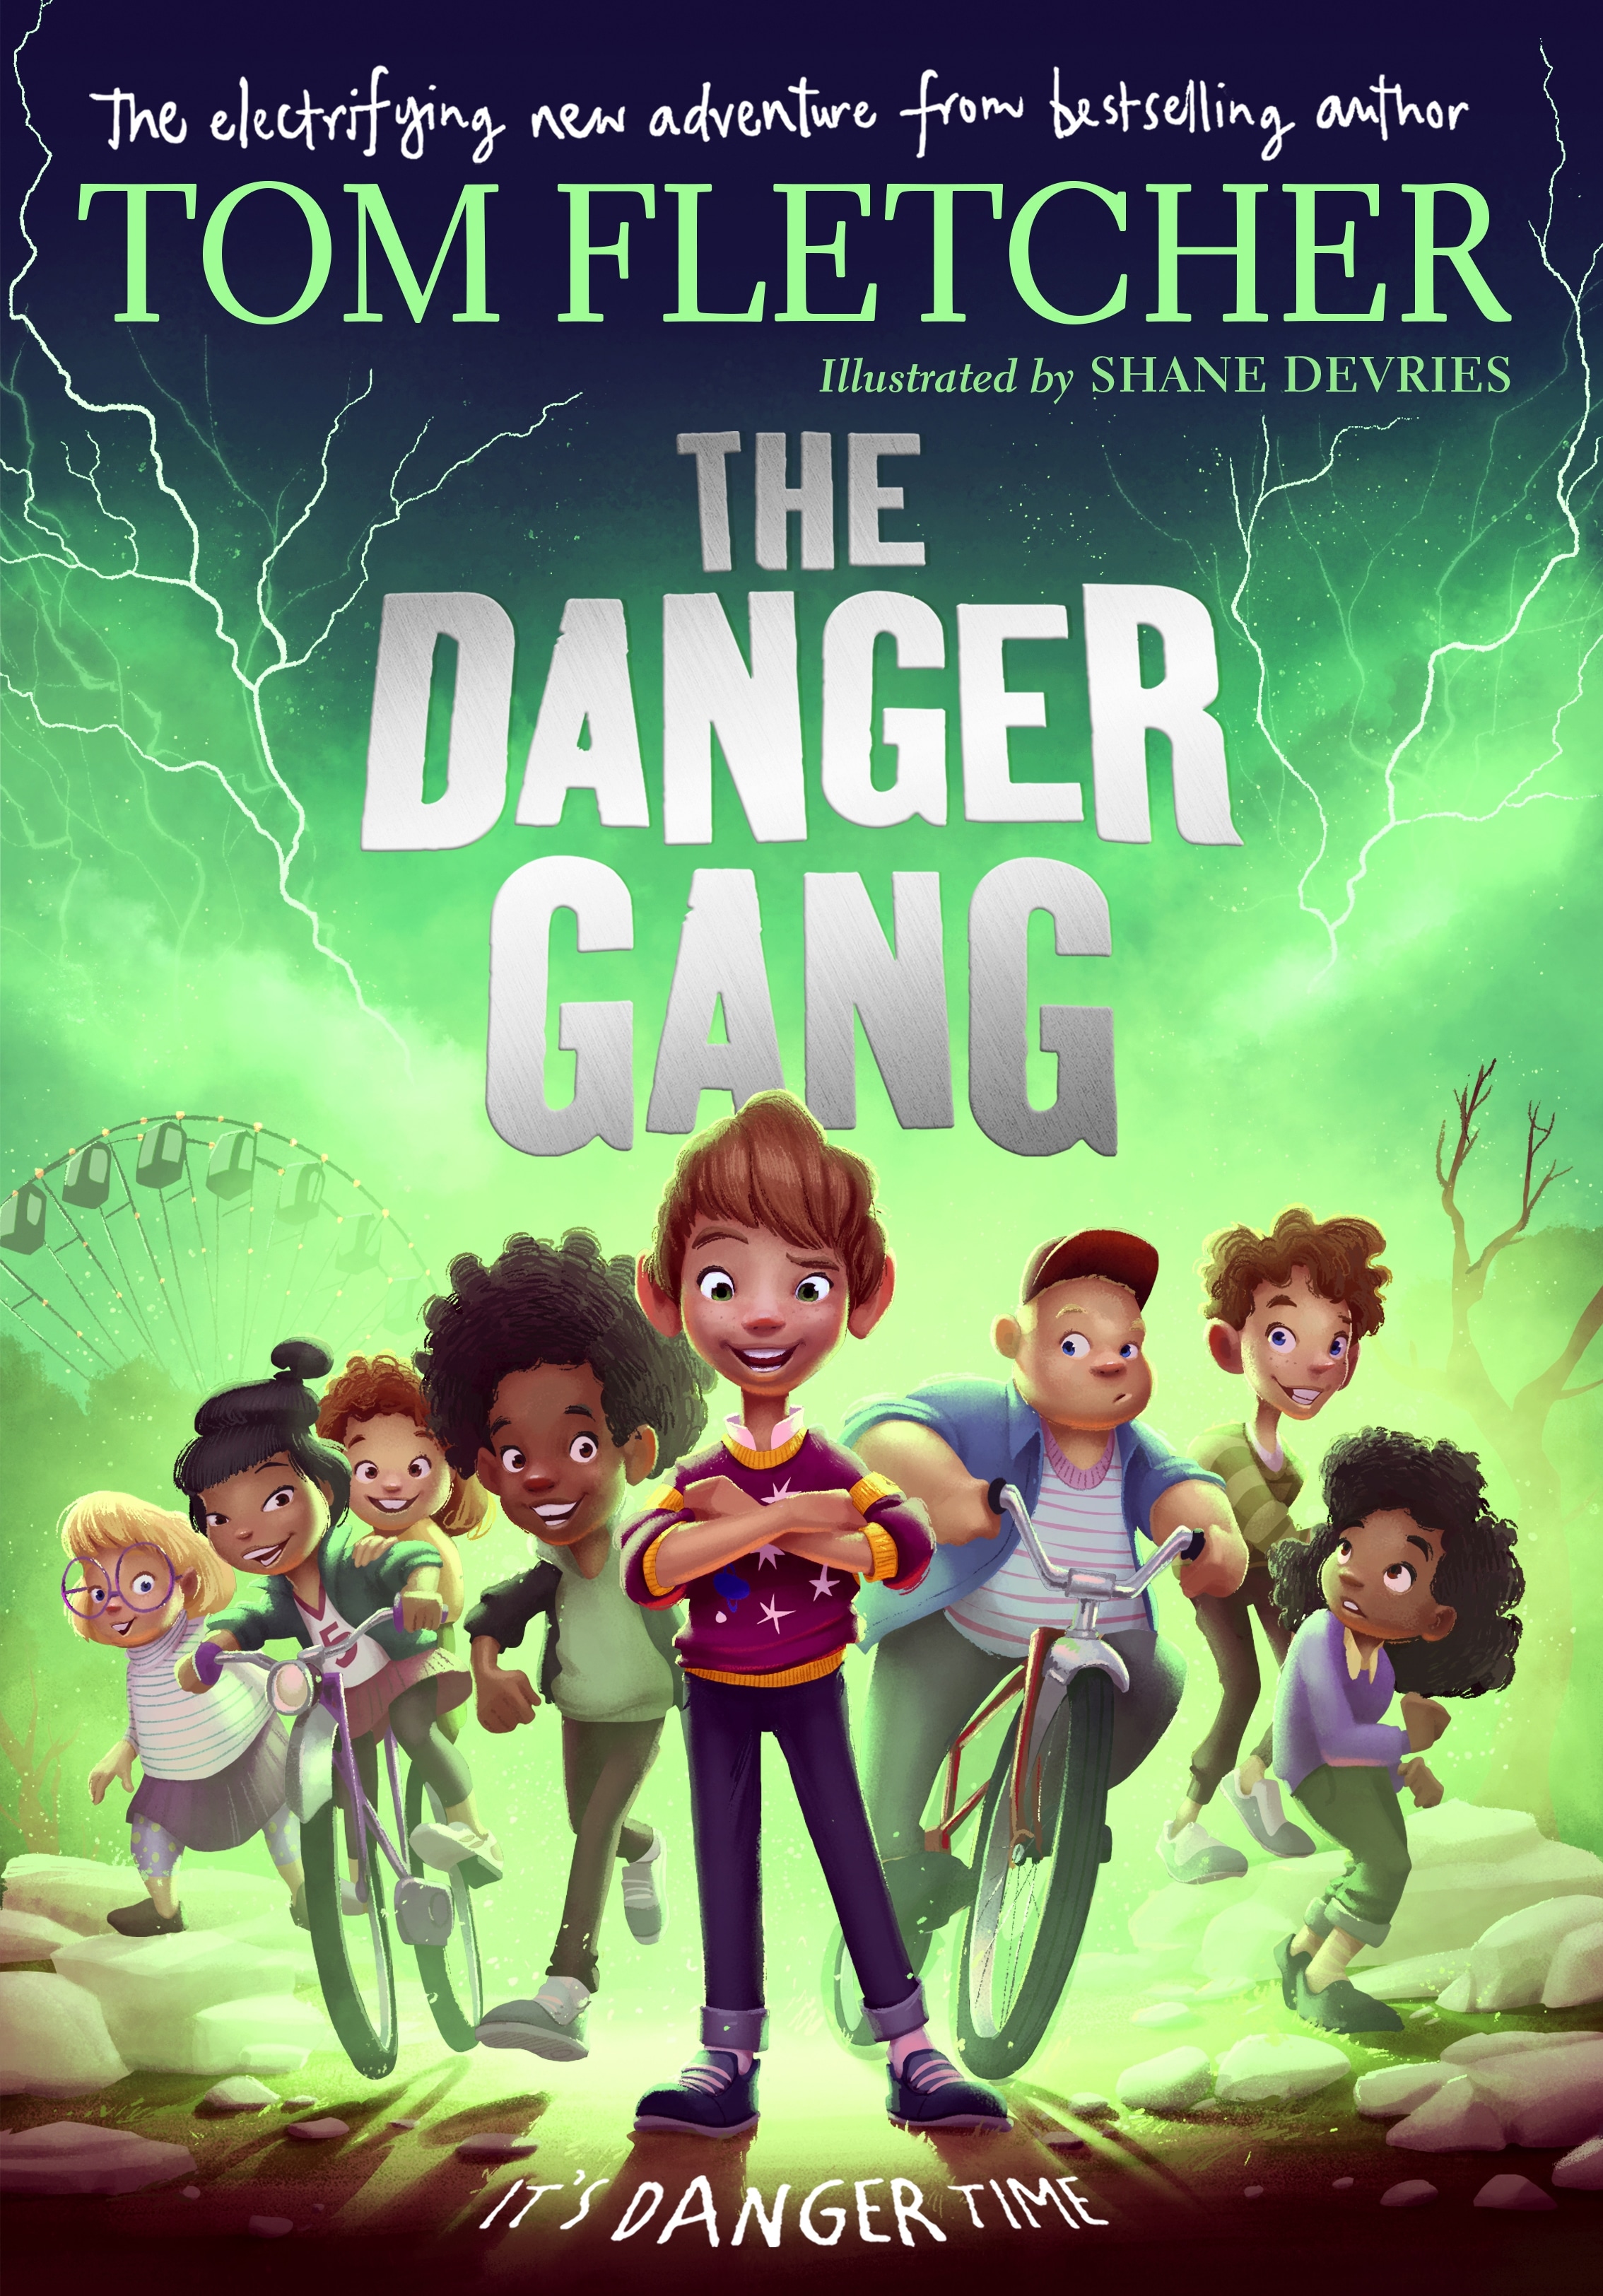 Book “The Danger Gang” by Tom Fletcher — October 1, 2020